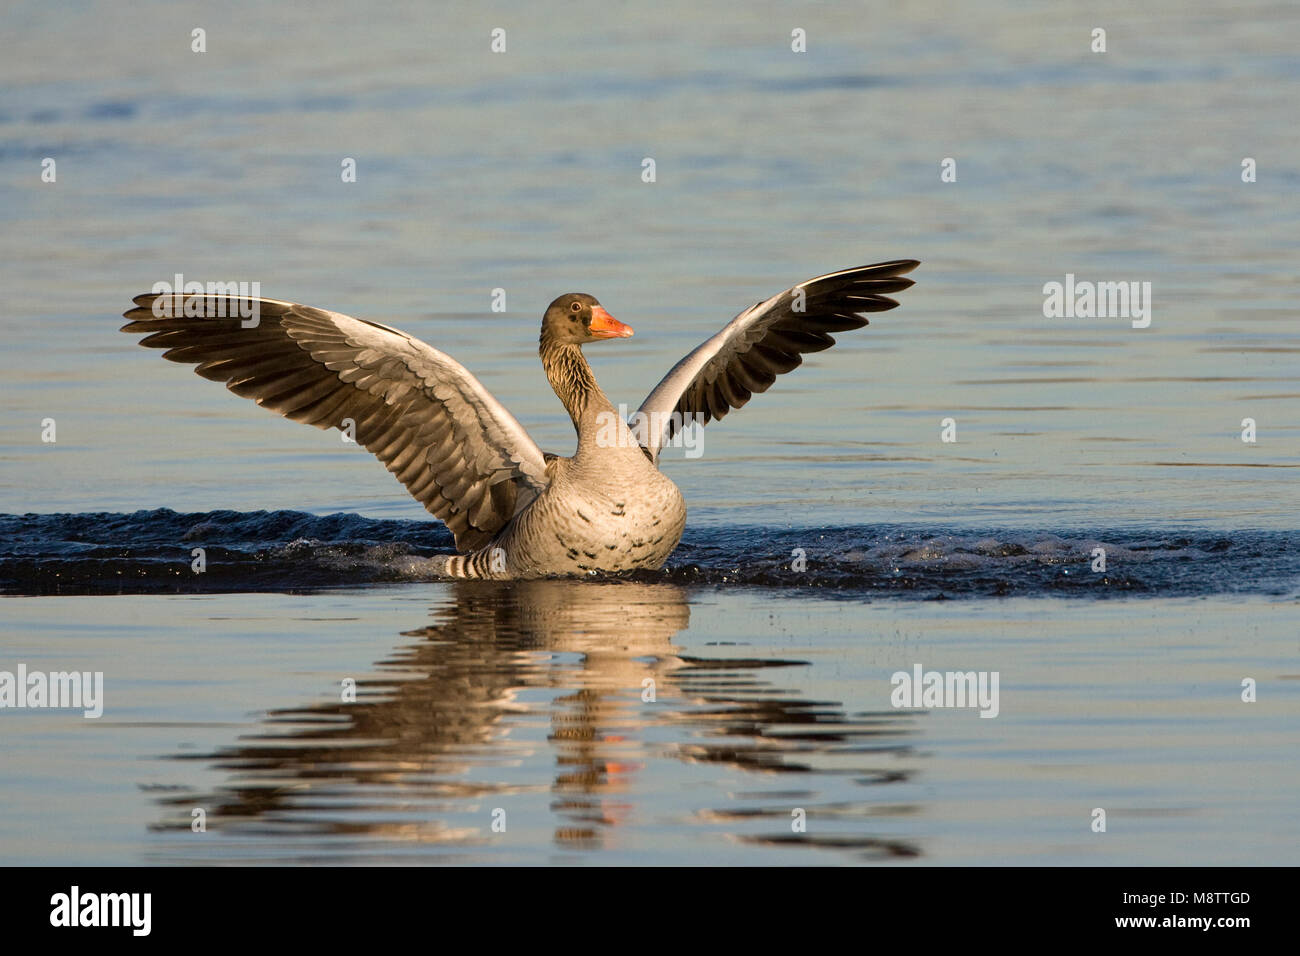 Grauwe Gans landend op water; Grey-lag Goose landing on water Stock Photo